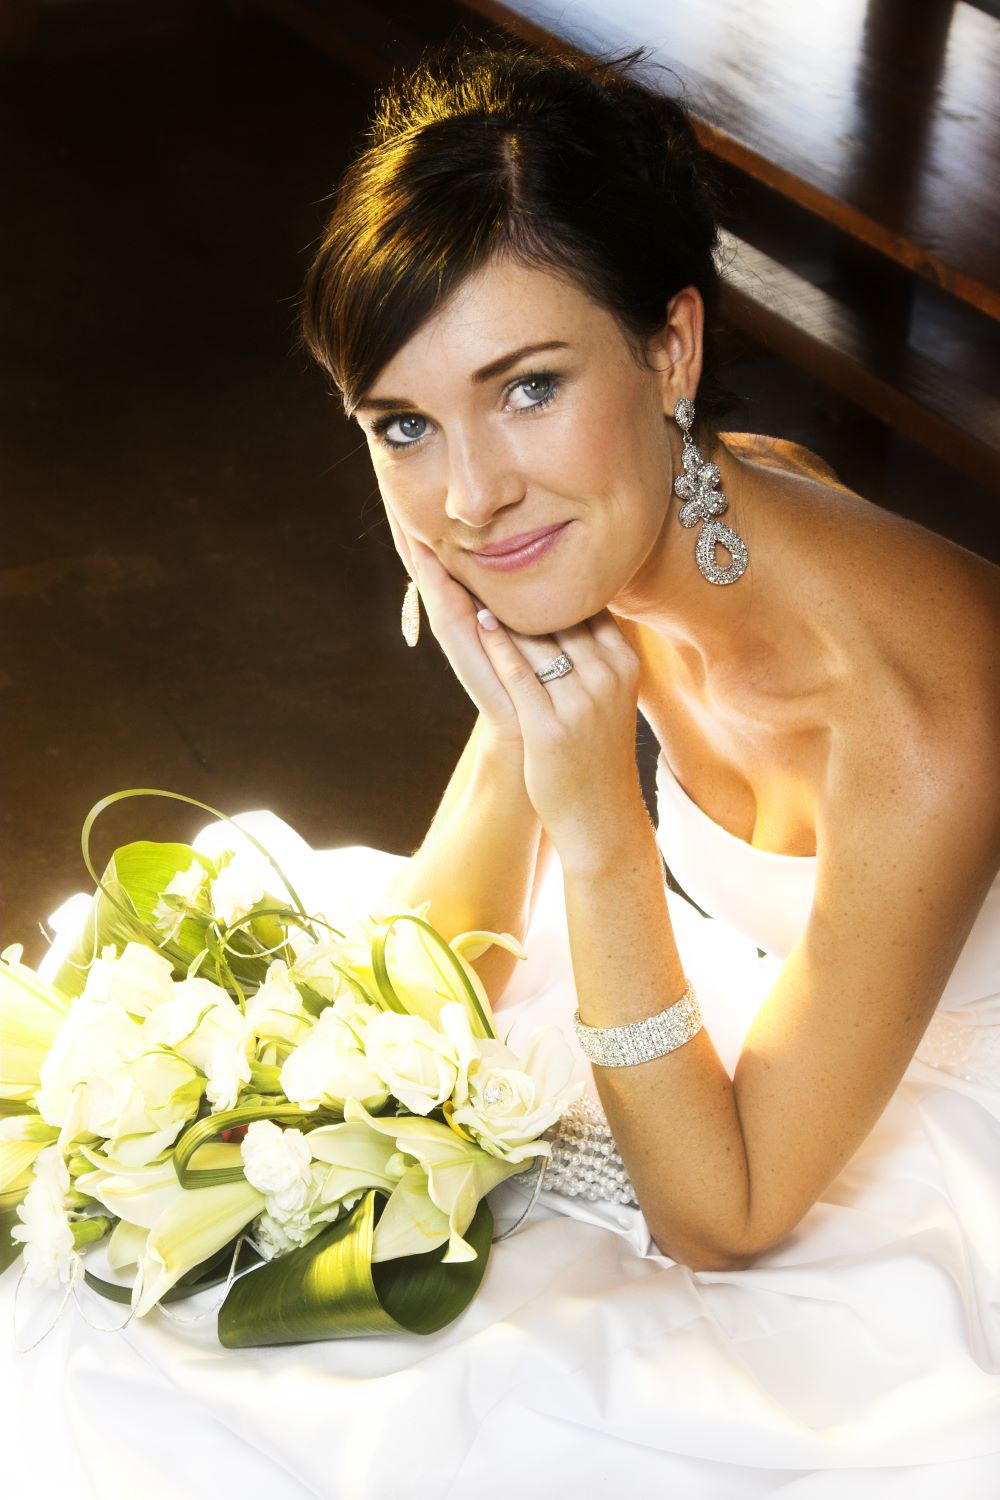 Λάμψτε σαν star του Ηοllywood την ημέρα του γάμου,  με τις ιδανικές θεραπείες από την Δρ. Μαρία Σκολαρίκου